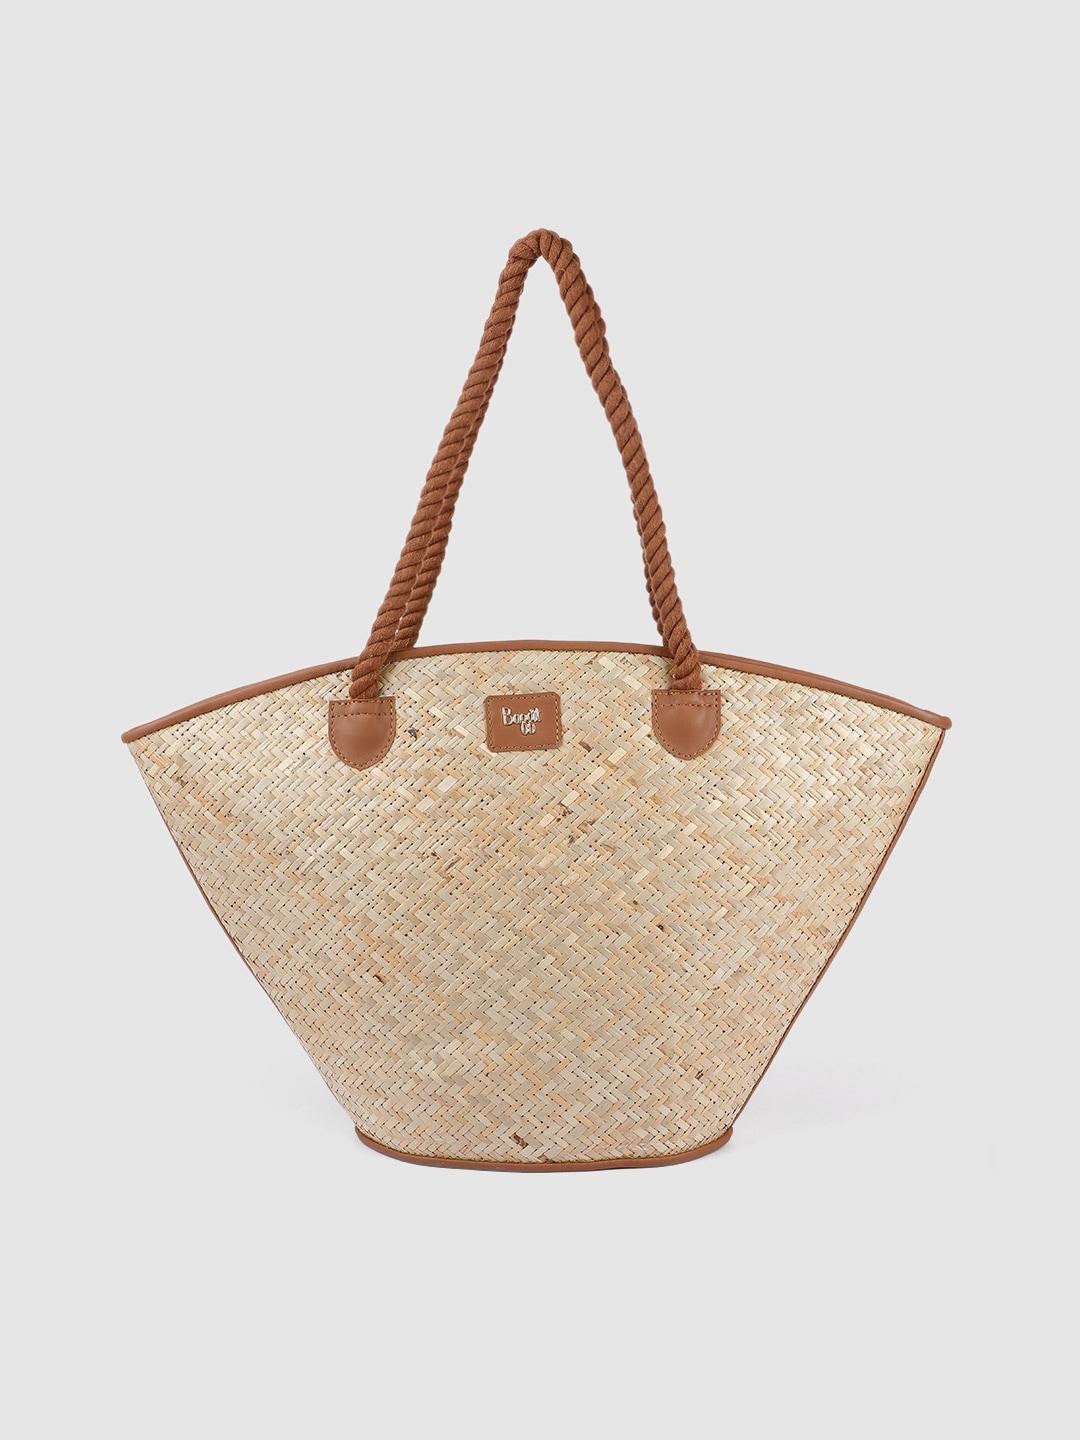 baggit-tan-brown-&-beige-basket-weave-caprice-silvy-shopper-shoulder-bag